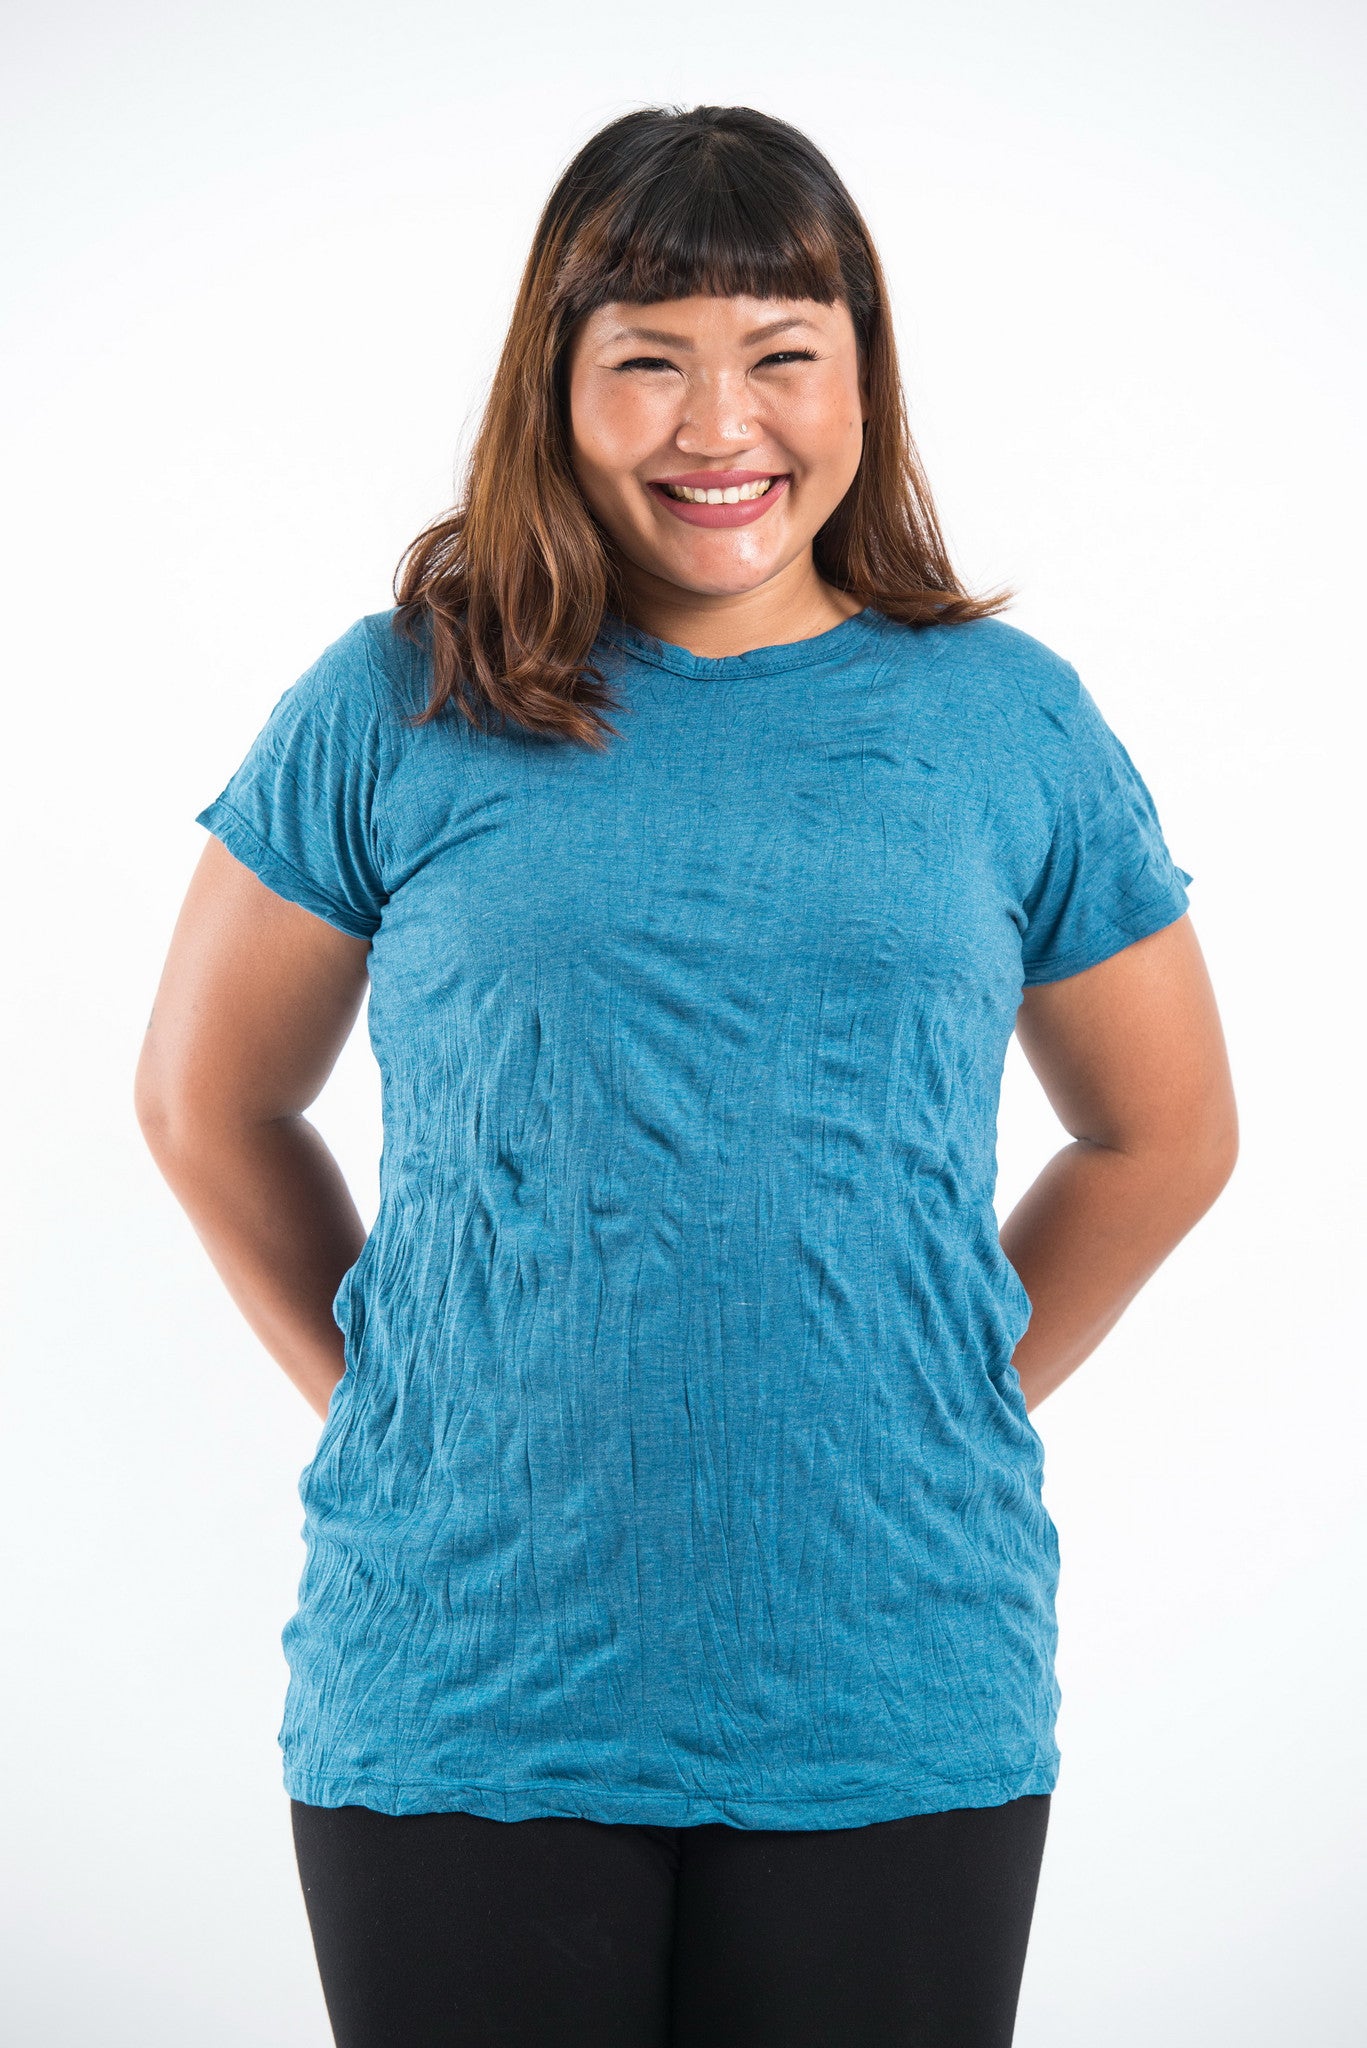 Plus Size Sure Design Women's Blank T-Shirt Denim Blue – Sure Design  Wholesale